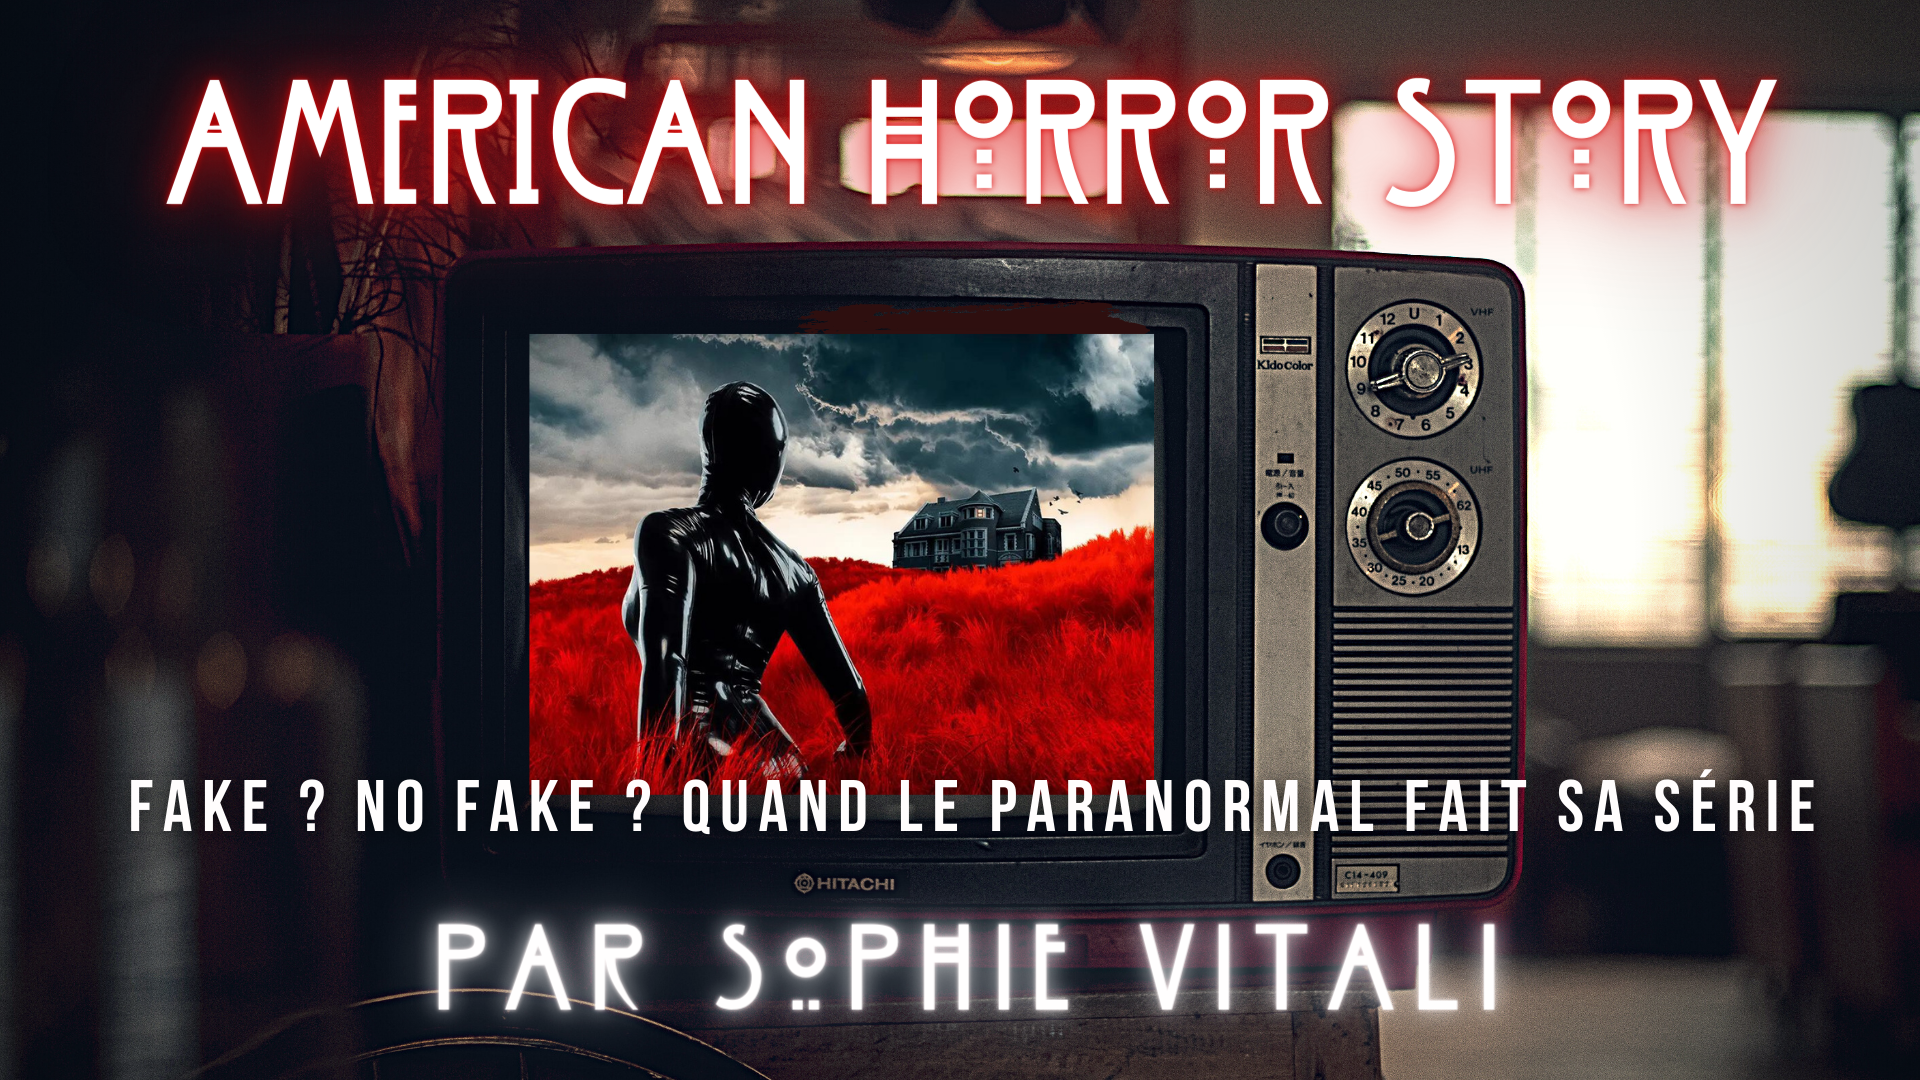 American Horror Story : la serie inspirée de faits réels par sophie vitali medium, auteure et parapsychologue.